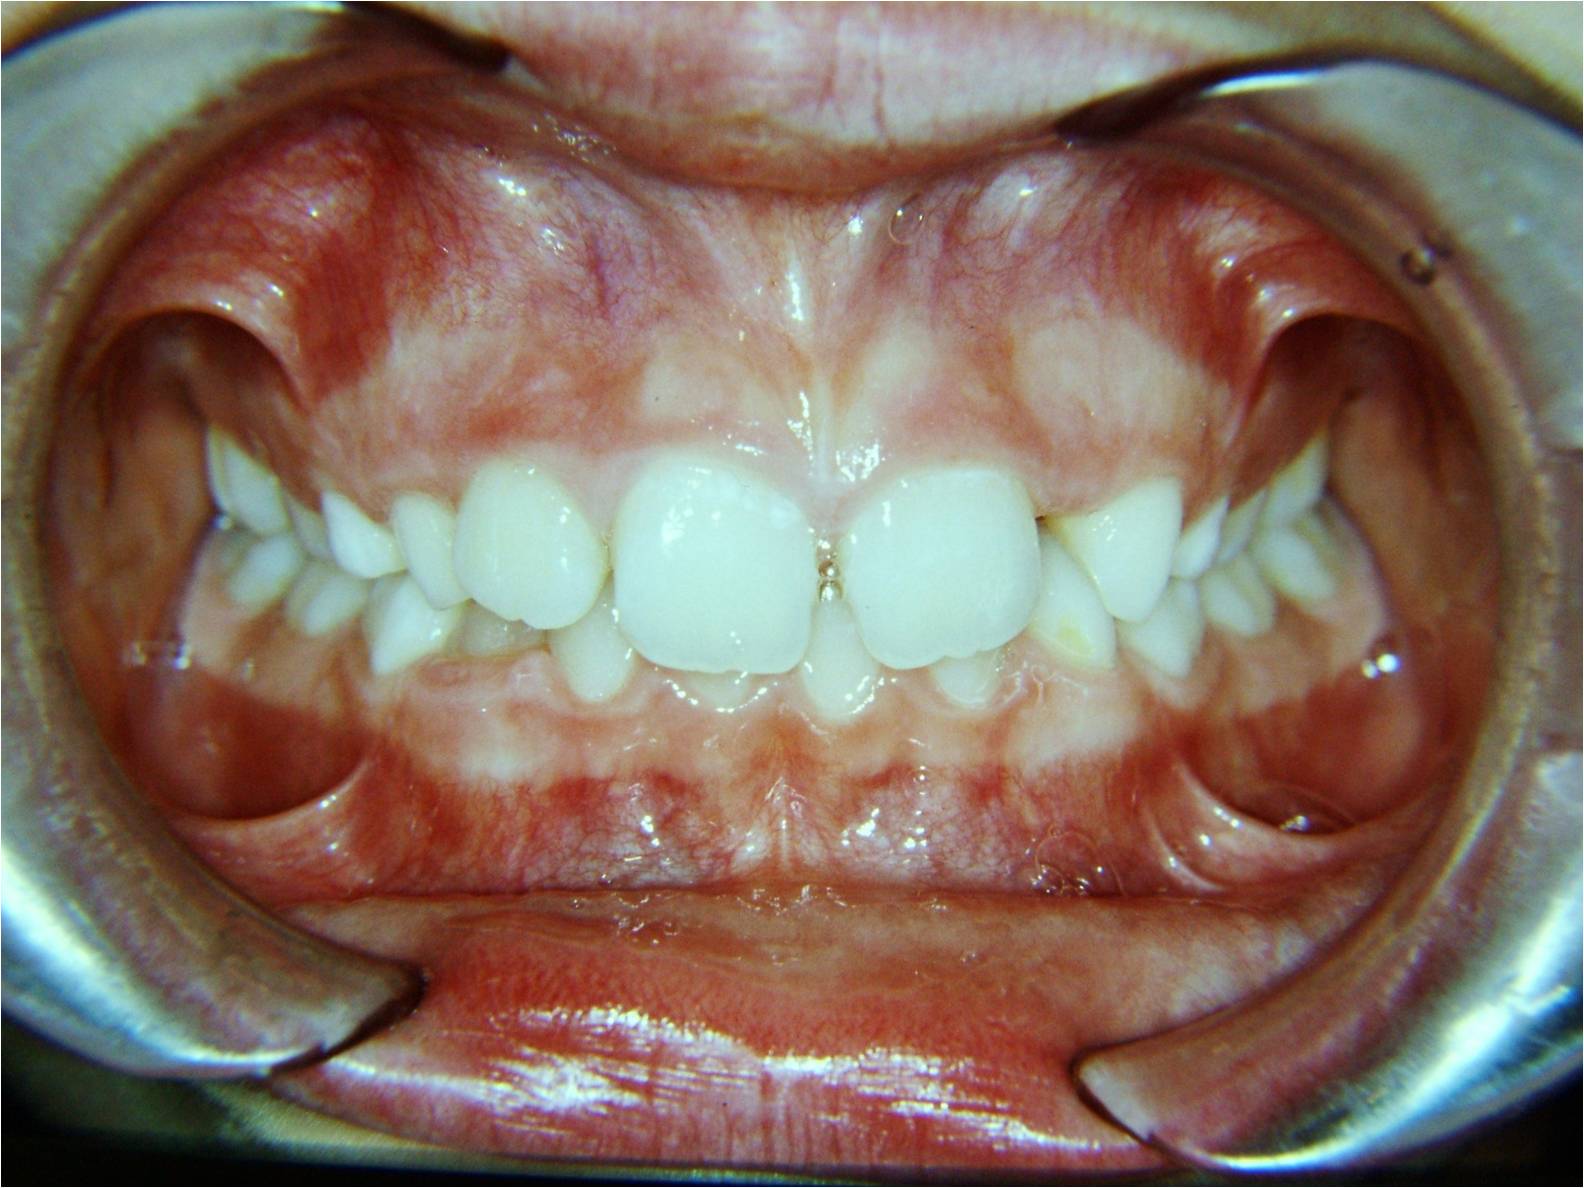 Damon  il  sistema  ortodontico  meraviglioso:  caso  4